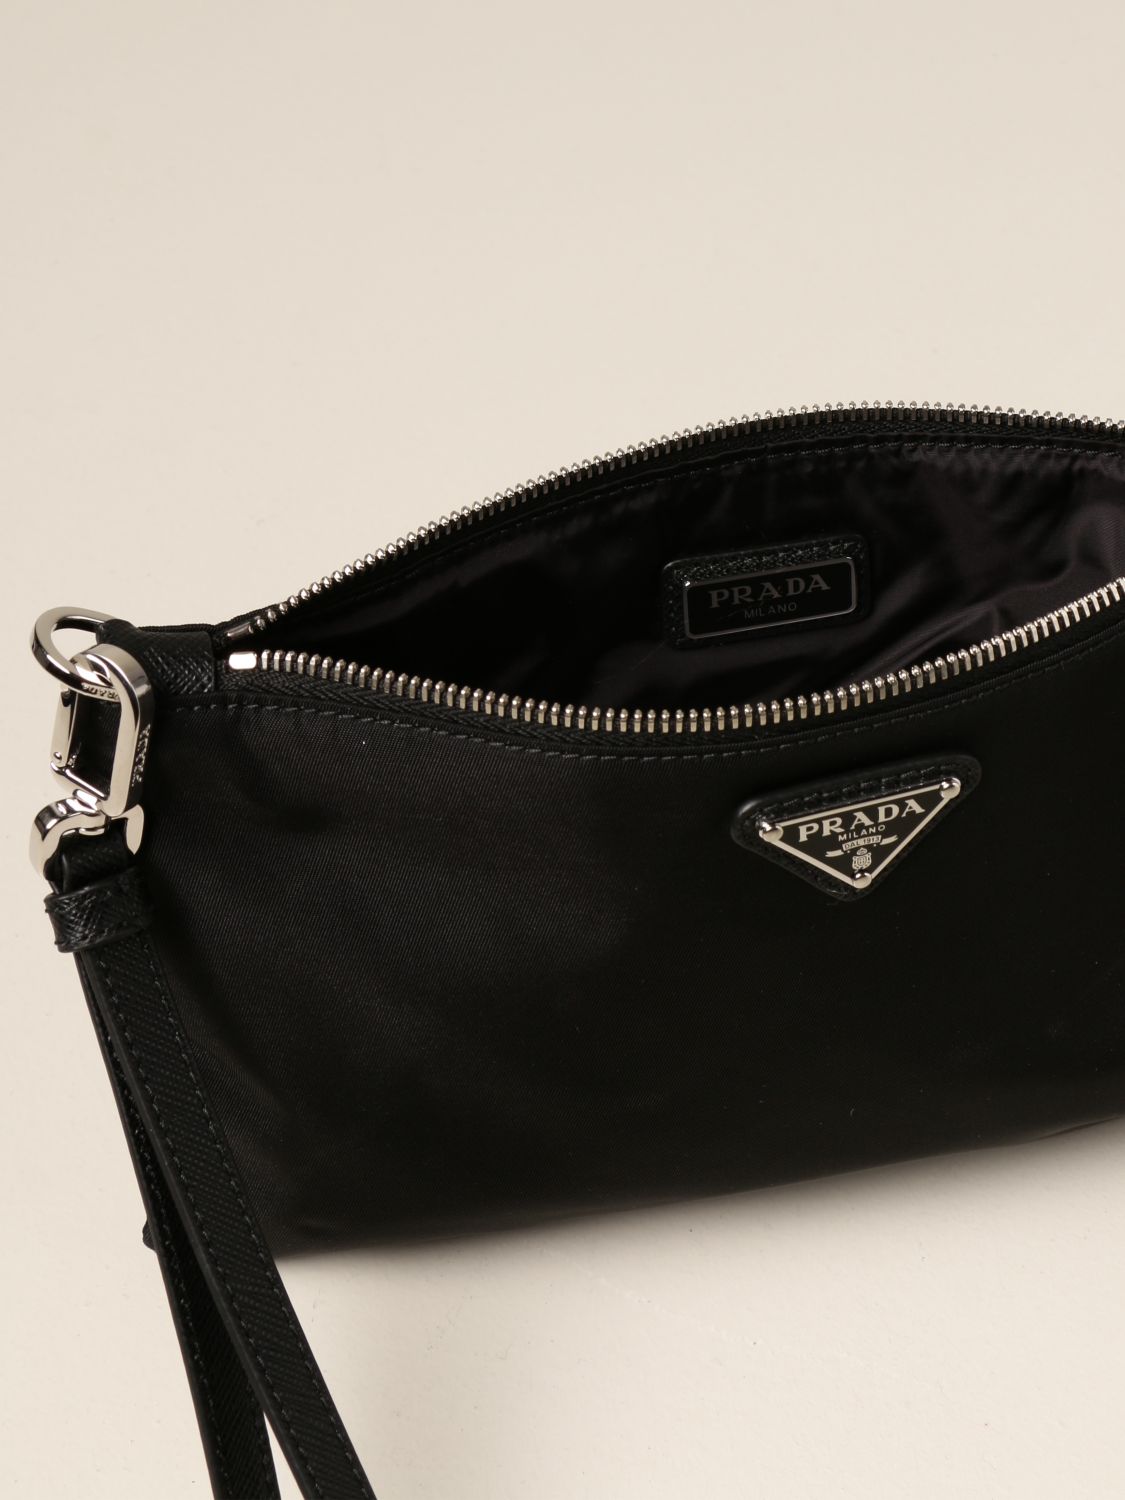 prada black clutch purse